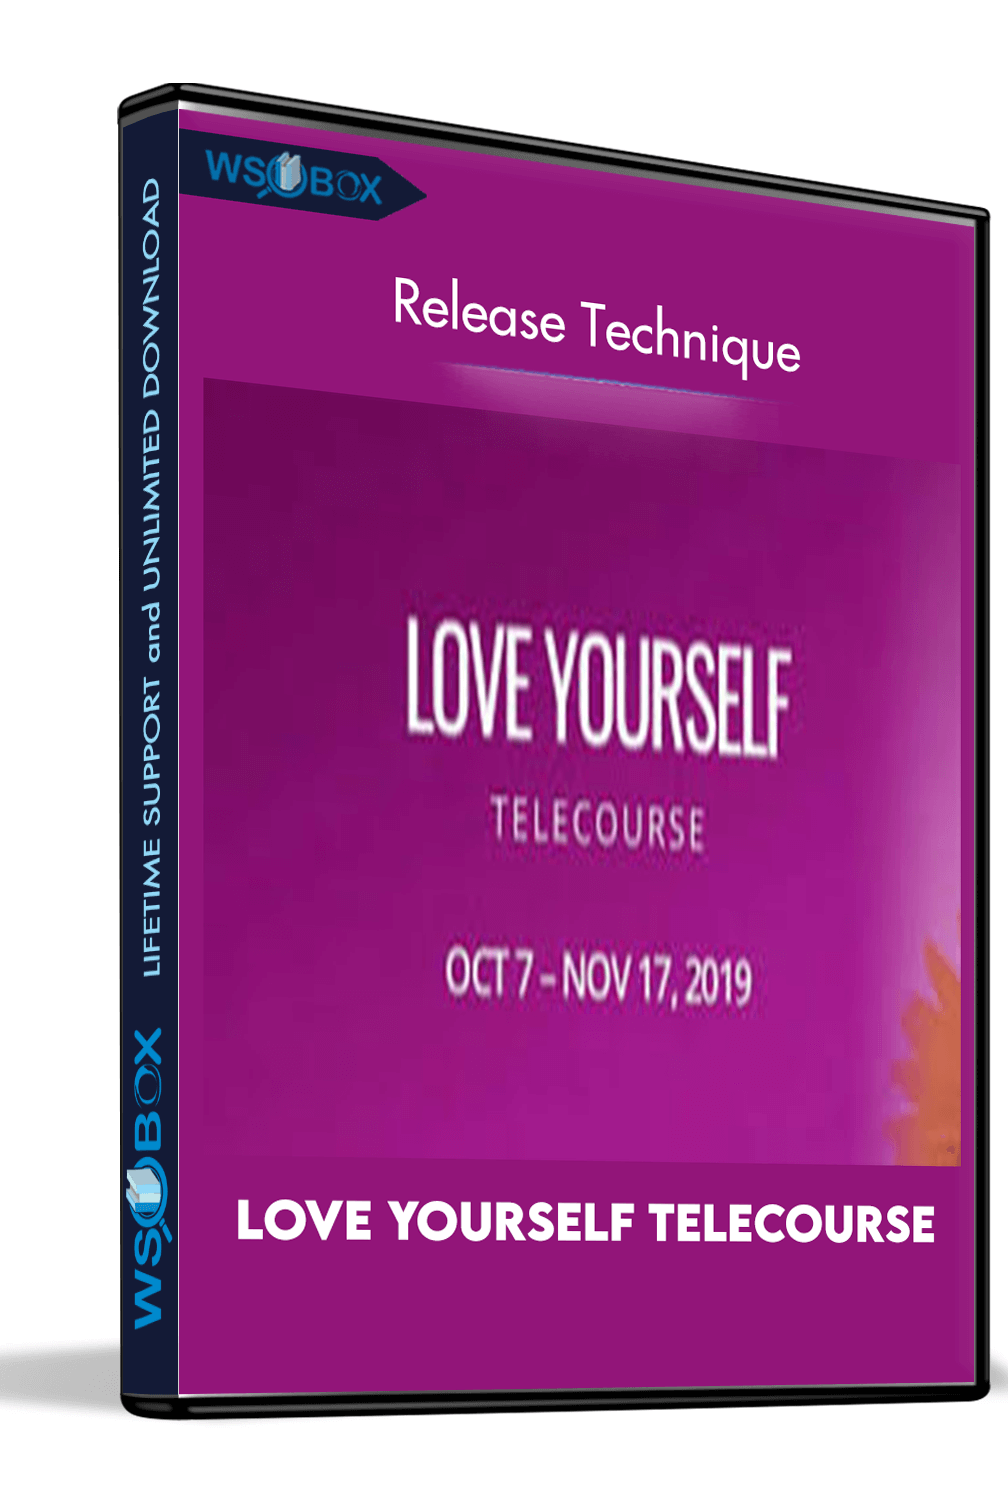 love-yourself-telecourse-release-technique